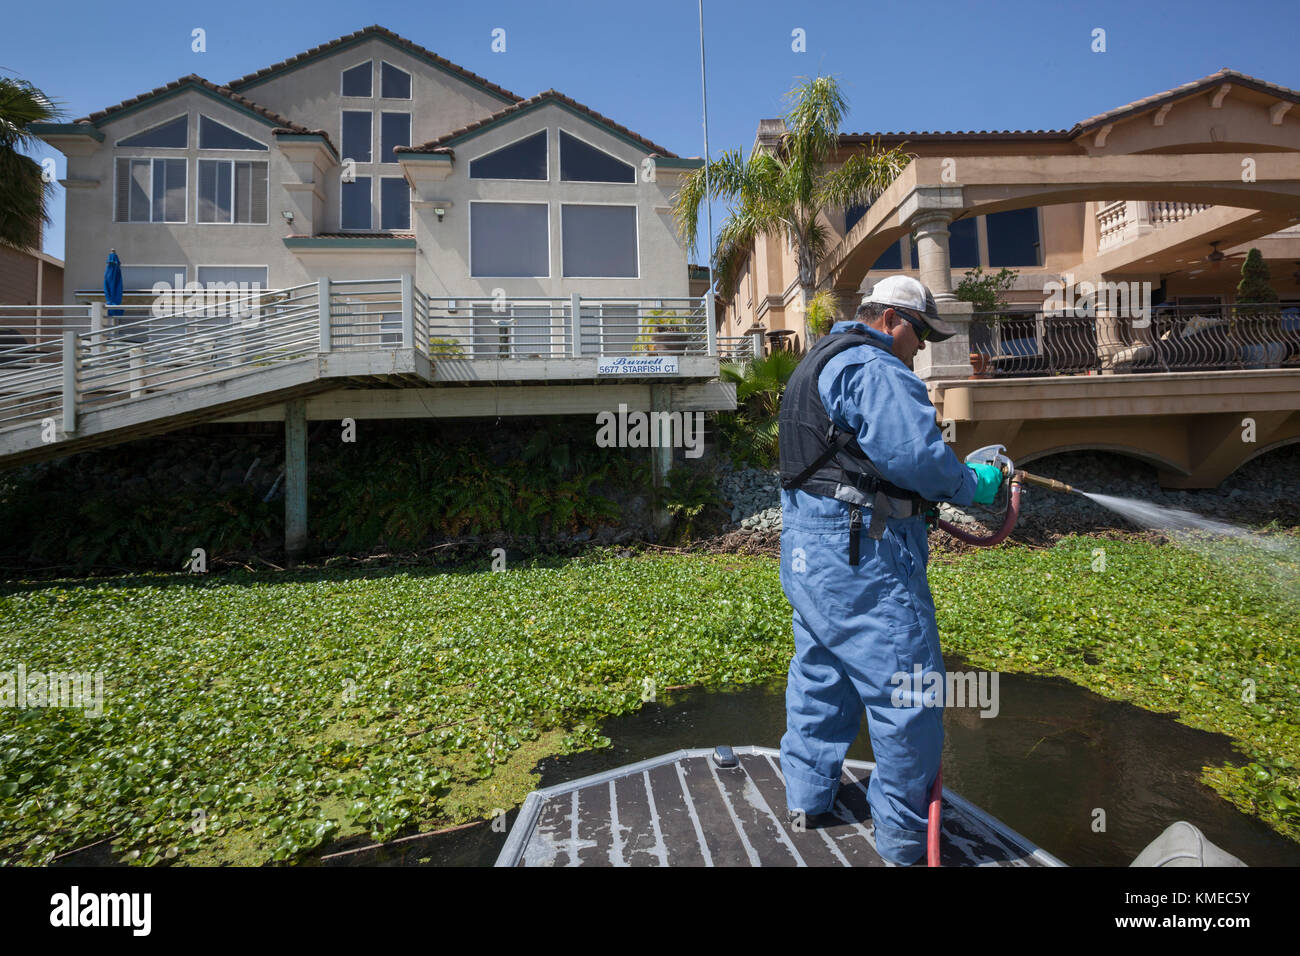 Hombre de jacinto de agua de pulverización con productos químicos, Stockton, California, EE.UU. Foto de stock